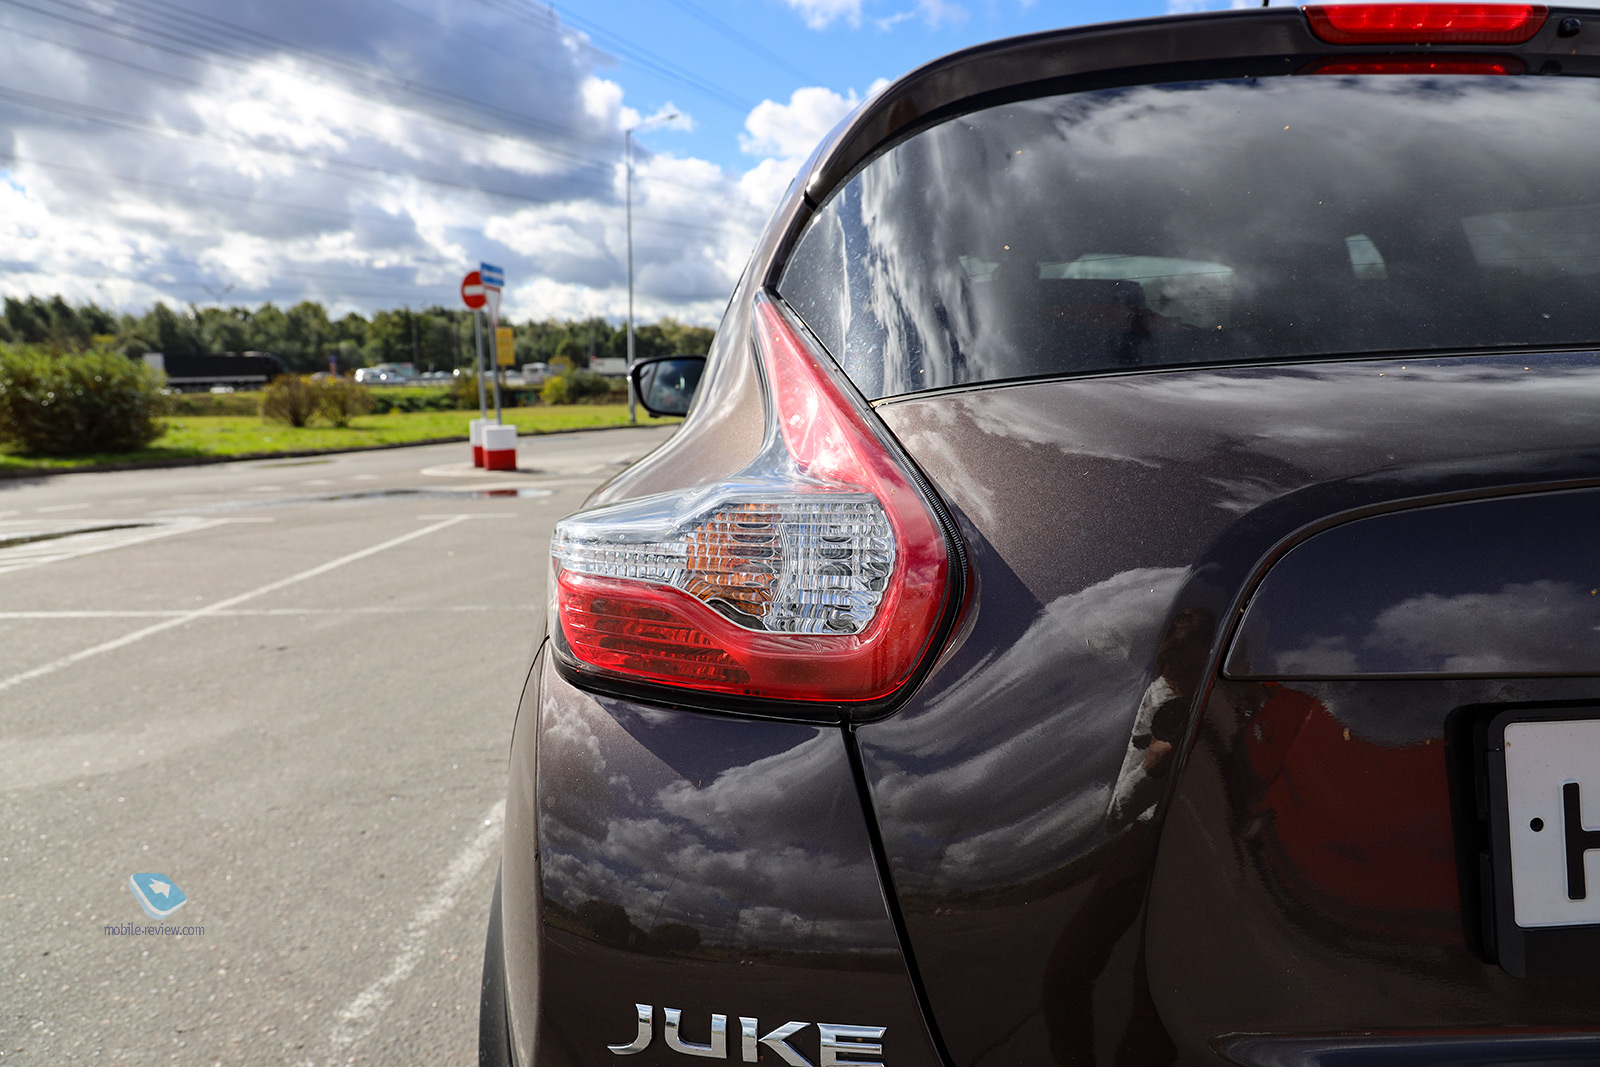   Nissan Juke 2018 